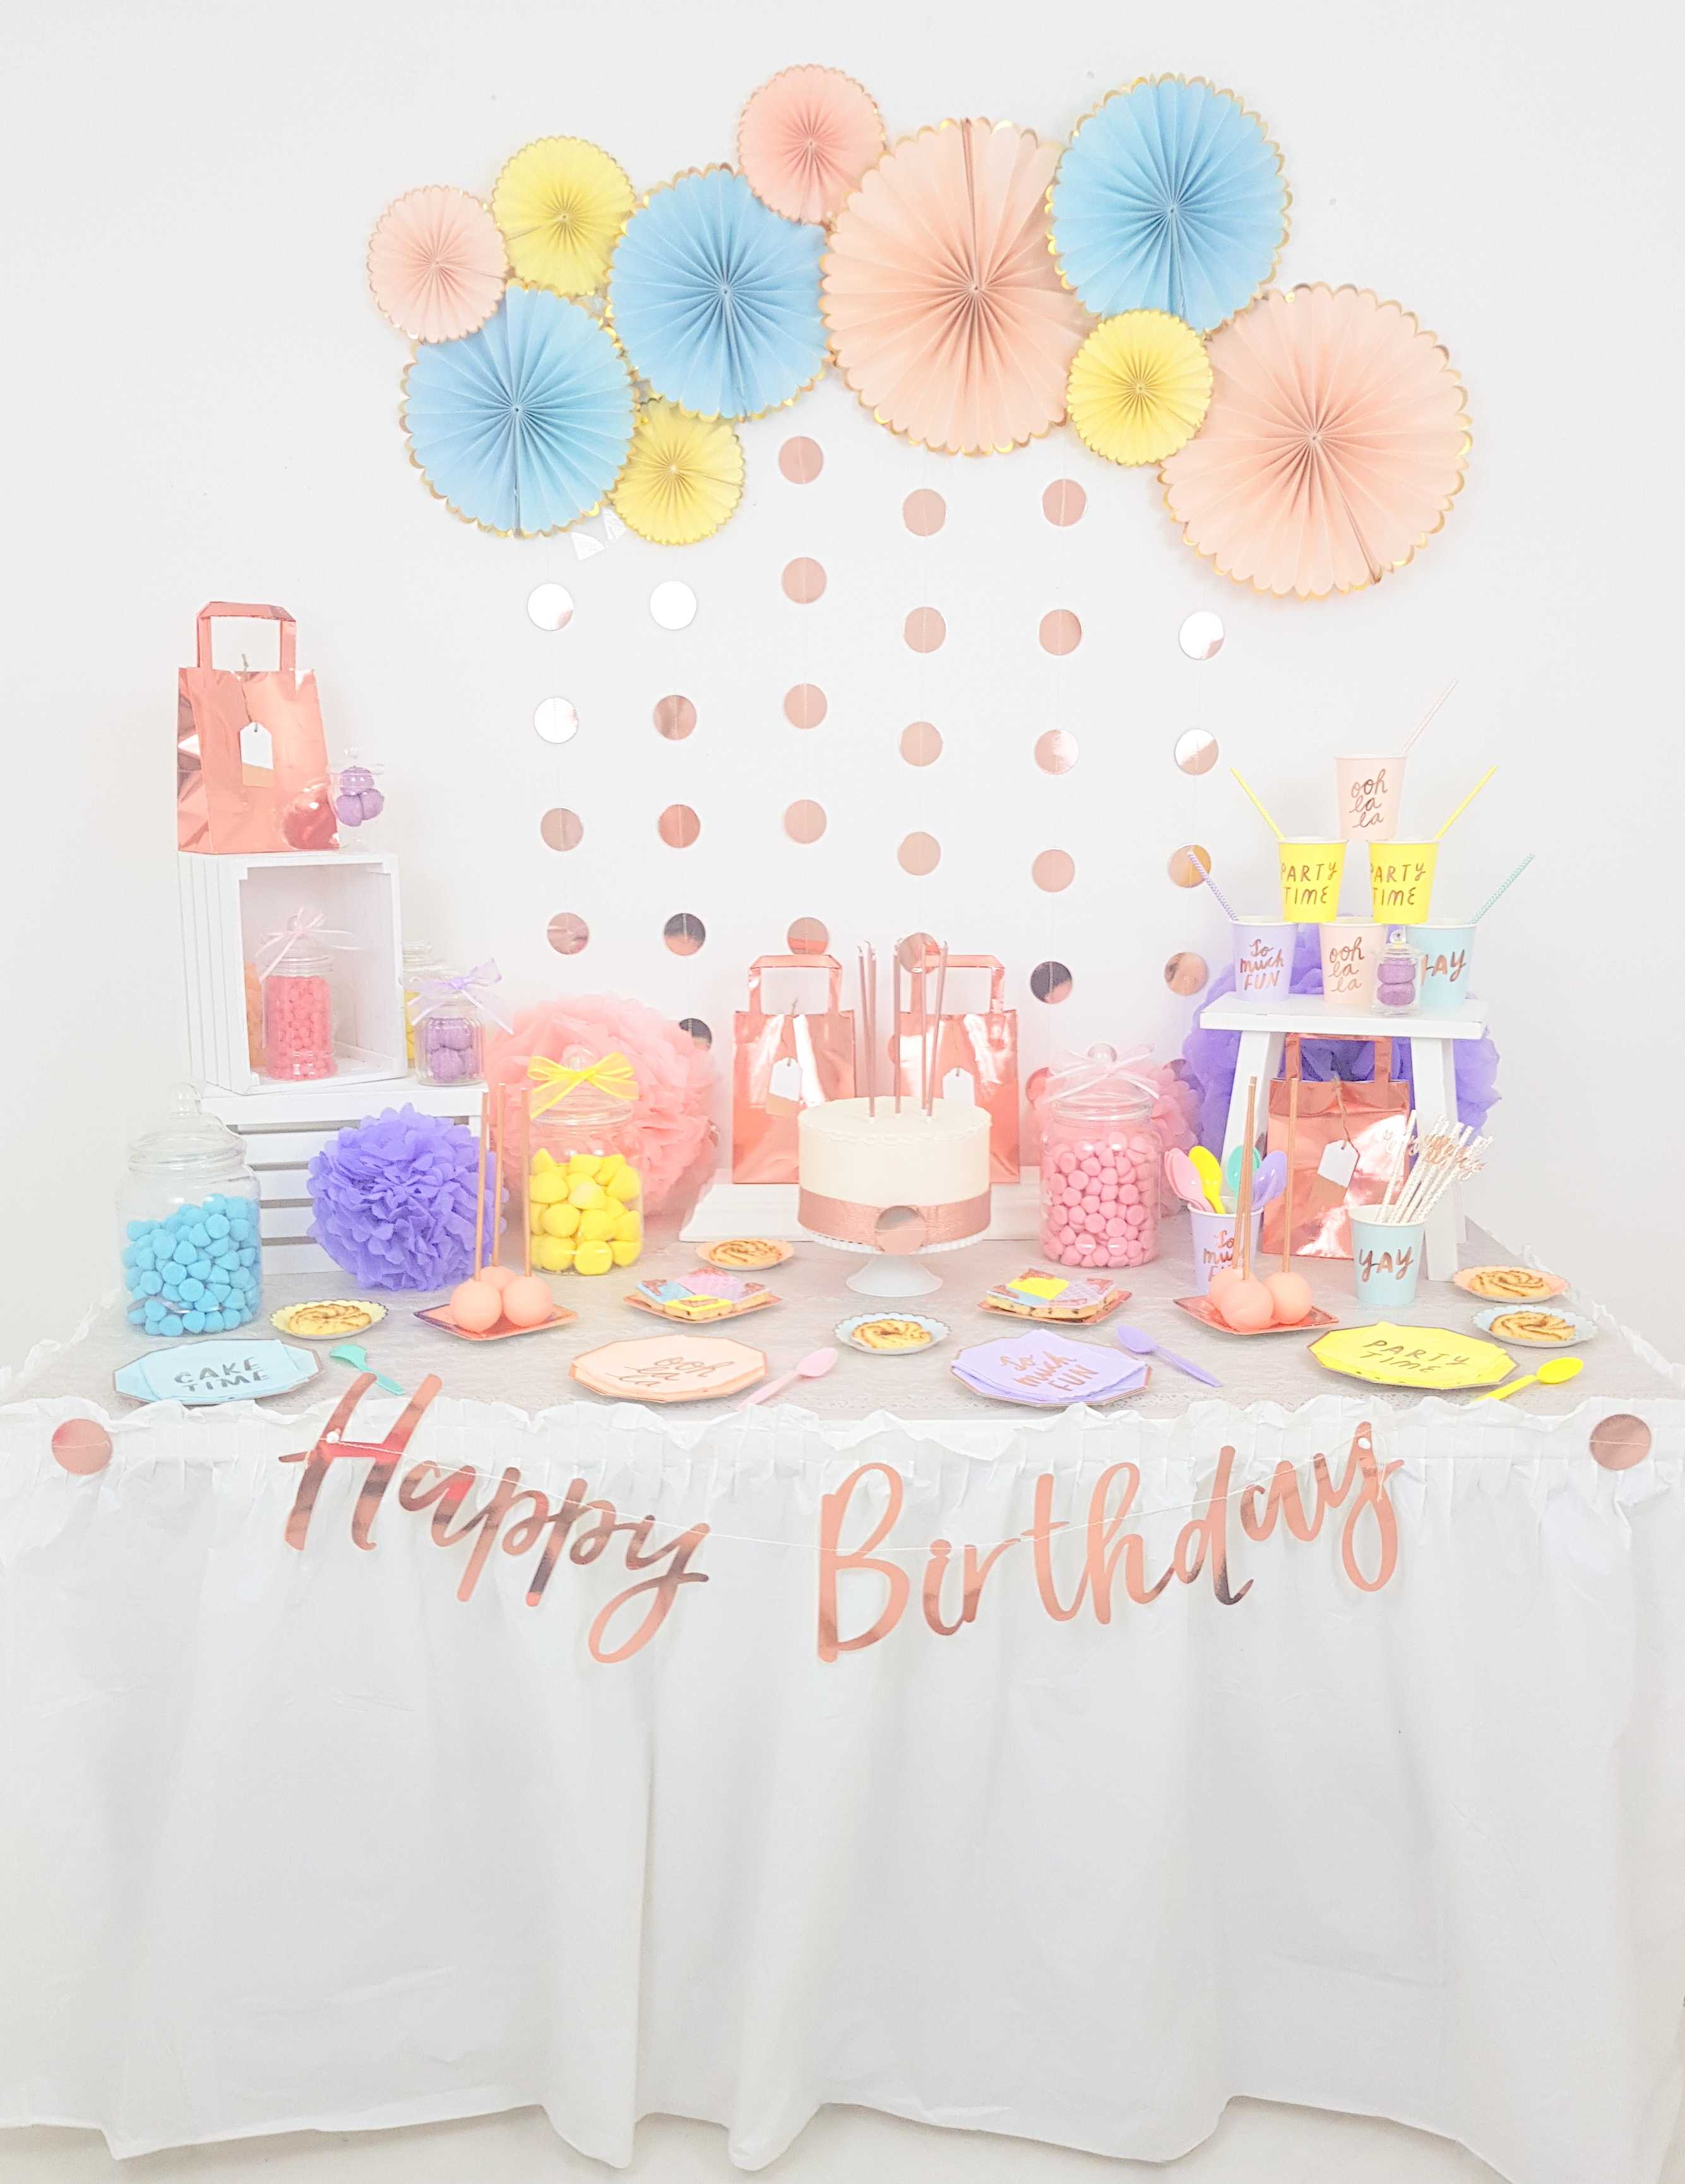 Fête D'anniversaire Pour Enfants Avec Décoration Pastel Colorée Et